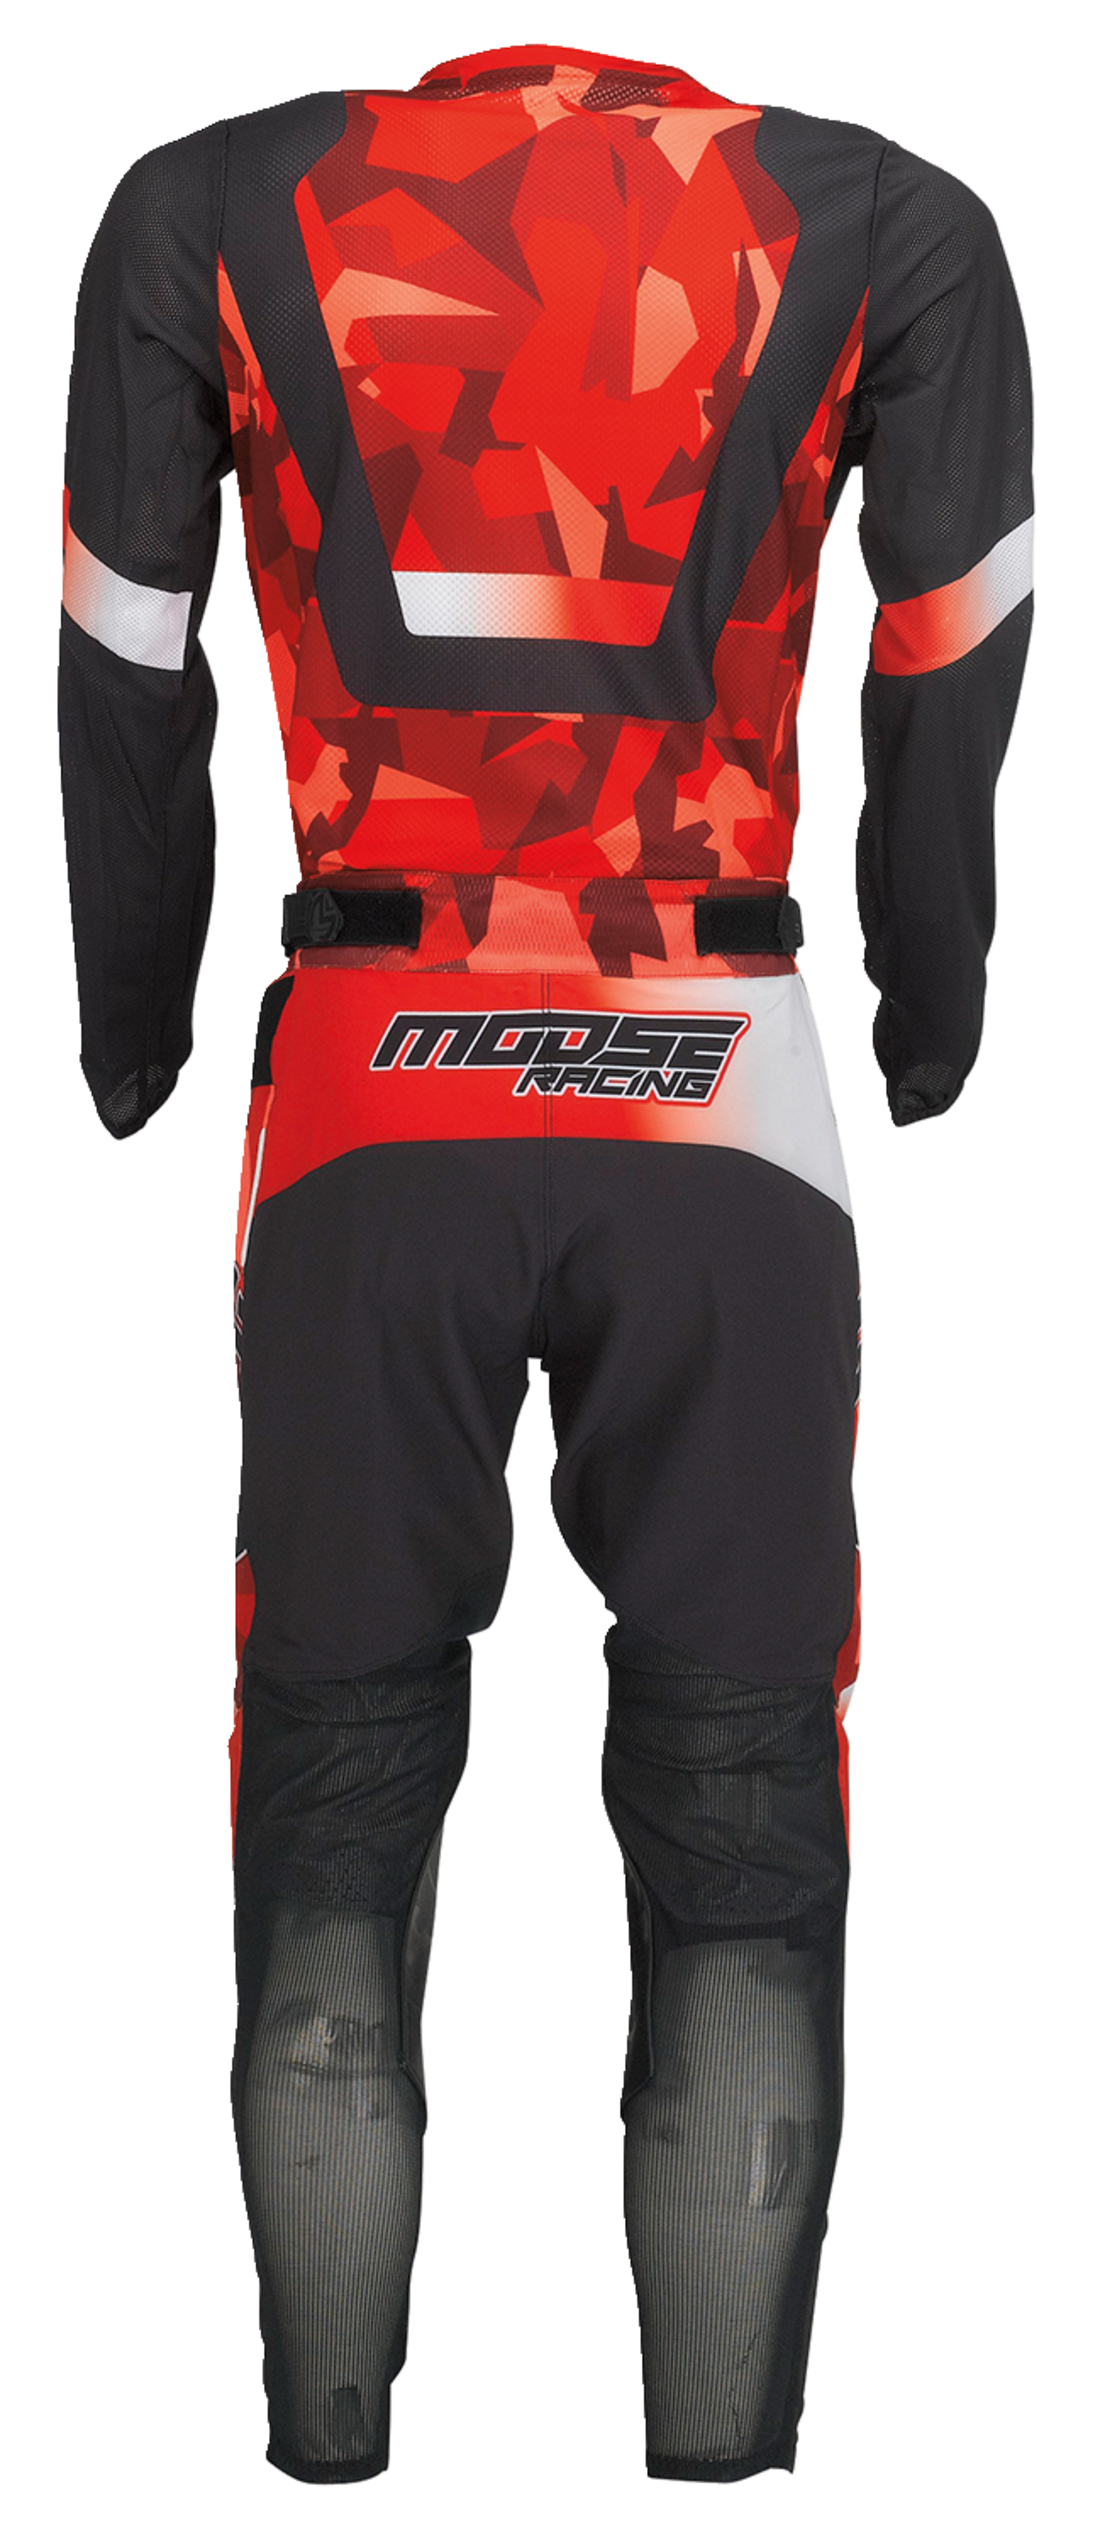 Camiseta MOOSE RACING Sahara™ - Rojo/Negro - Grande 2910-7206